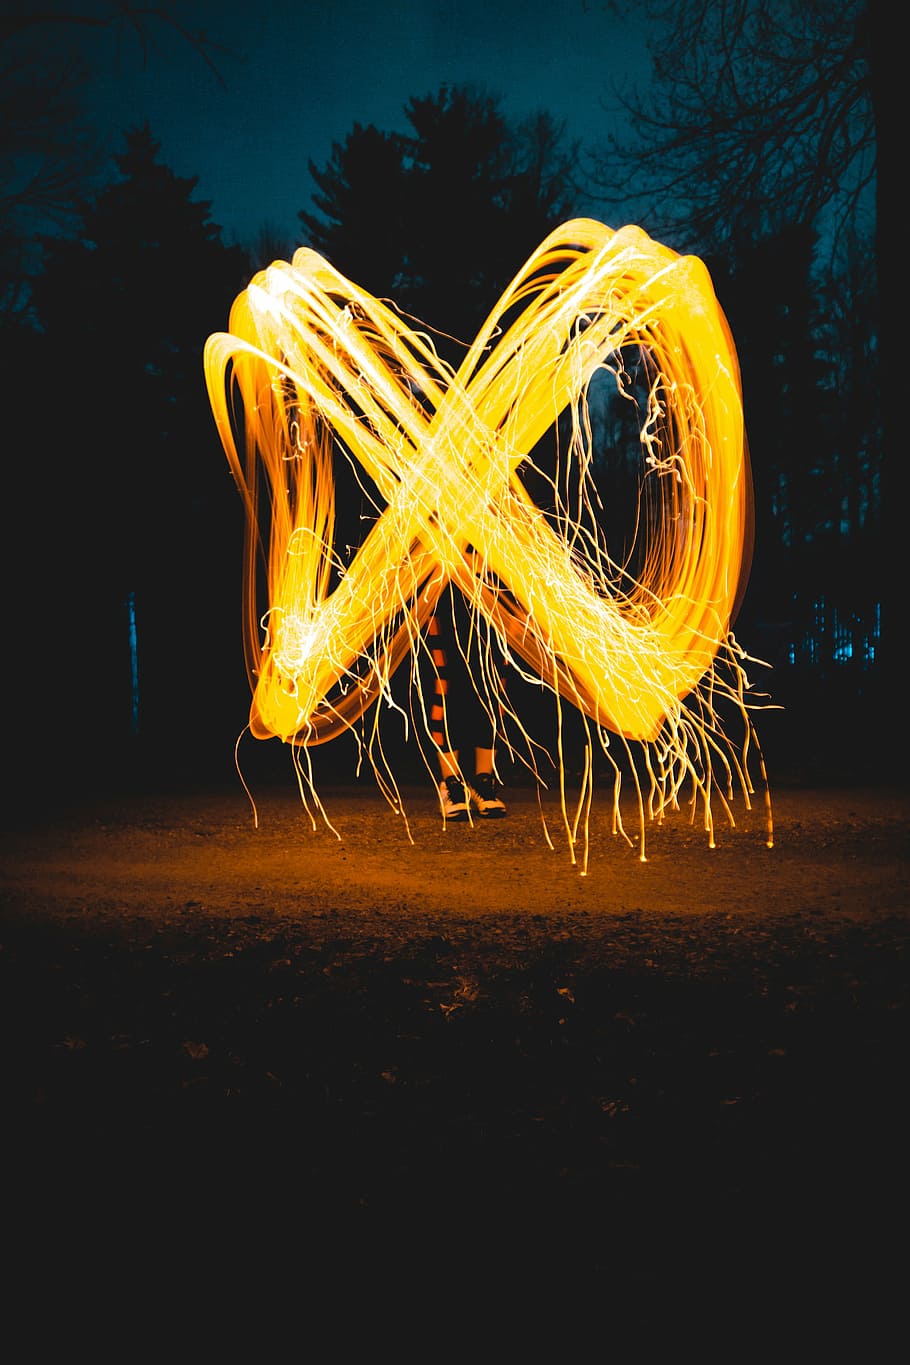 fotografi baja kawat, orang, juggling, api, fotografi, infinity, cahaya, lukisan, alam, pohon